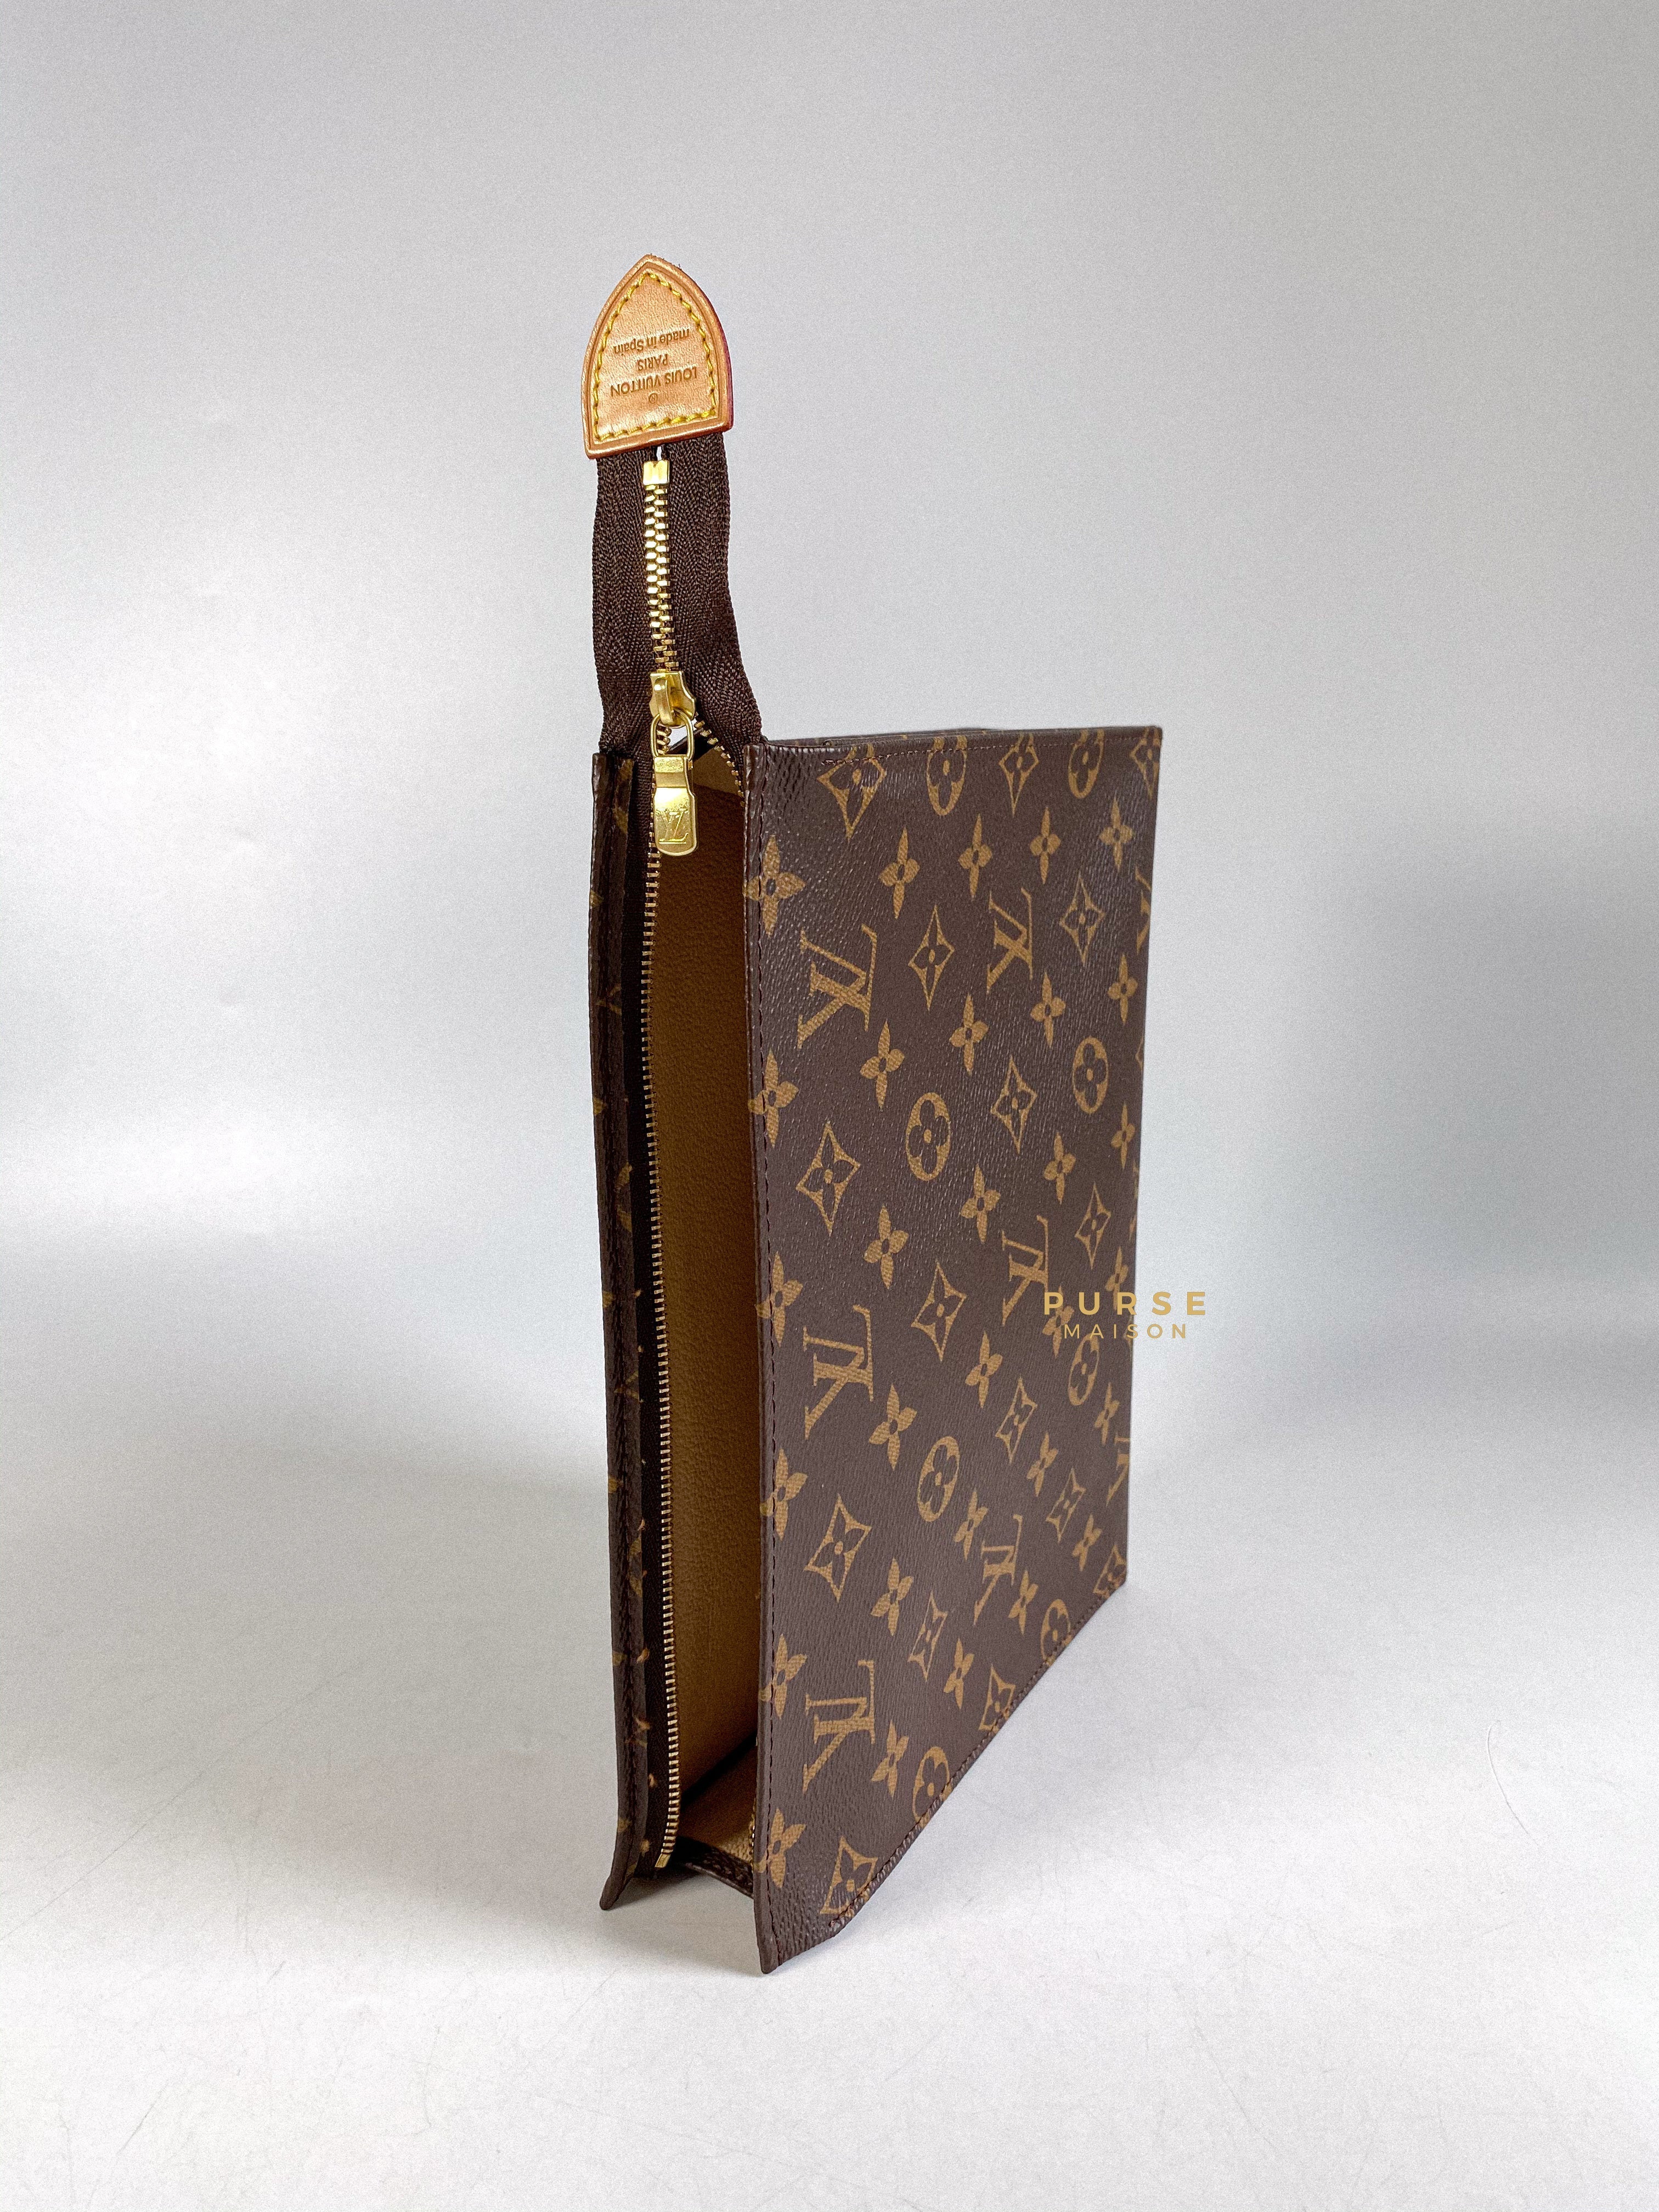 Louis Vuitton's Micro Vanity 💕 #louisvuittonbag #louisvuitton